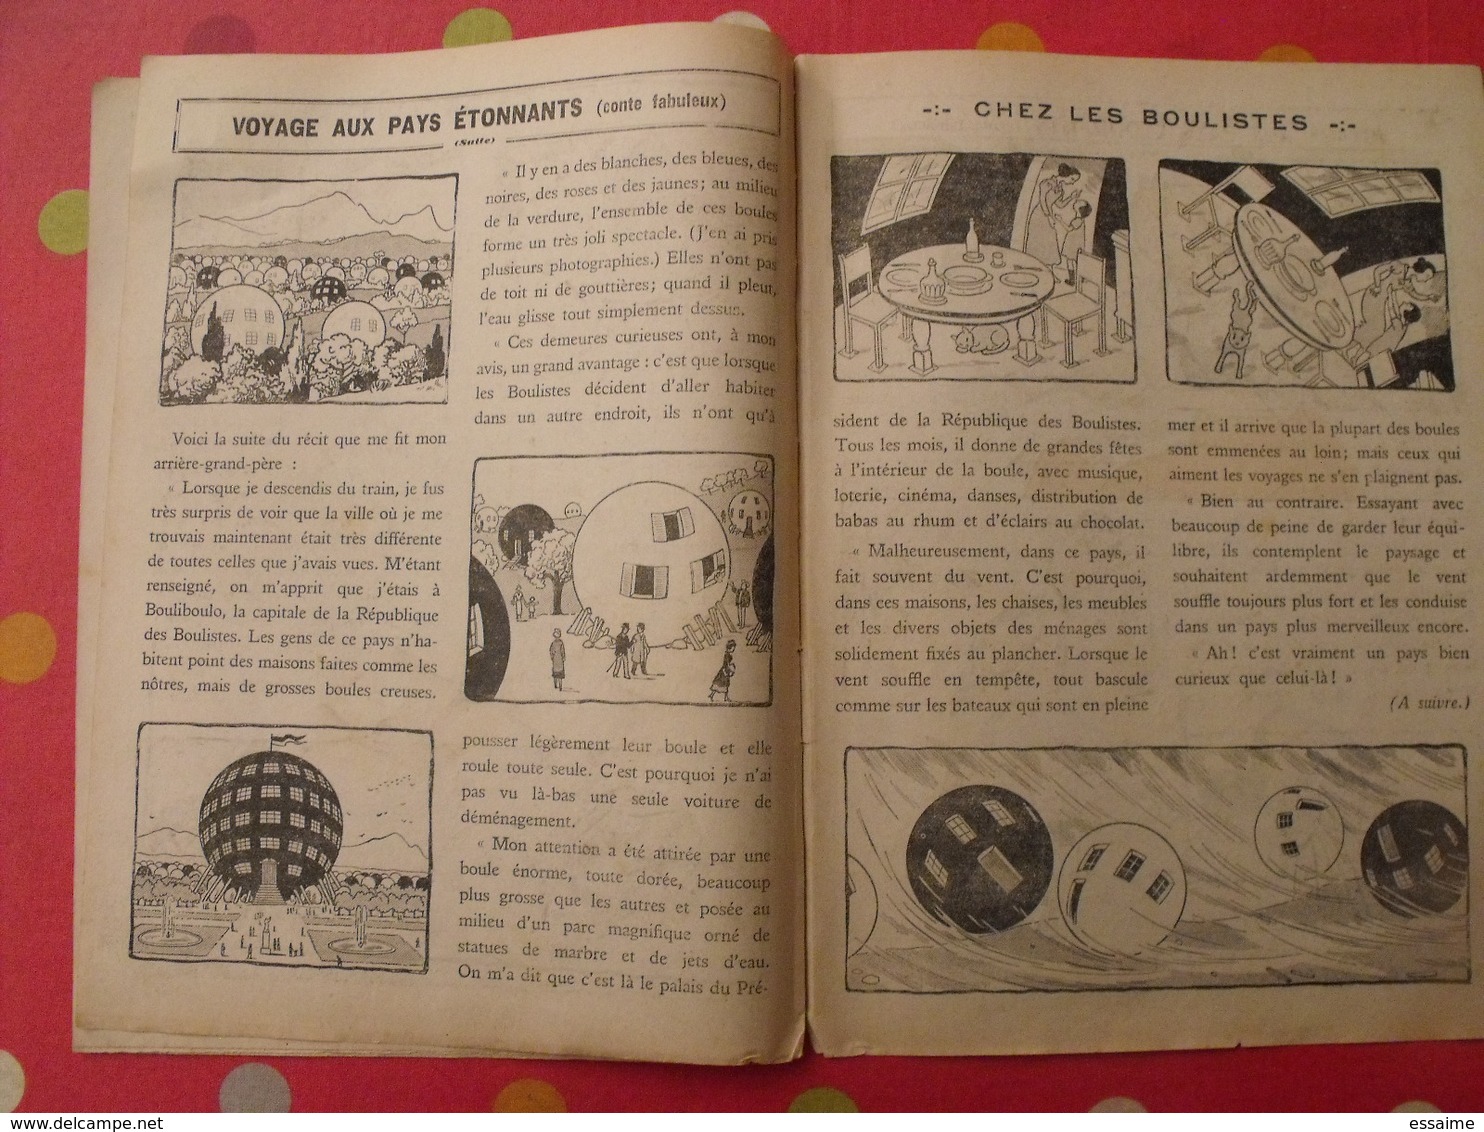 lot de 12 revues "le journal de bébé" de 1938. pouf davine rob-vel rotman rogelon pélik polydor